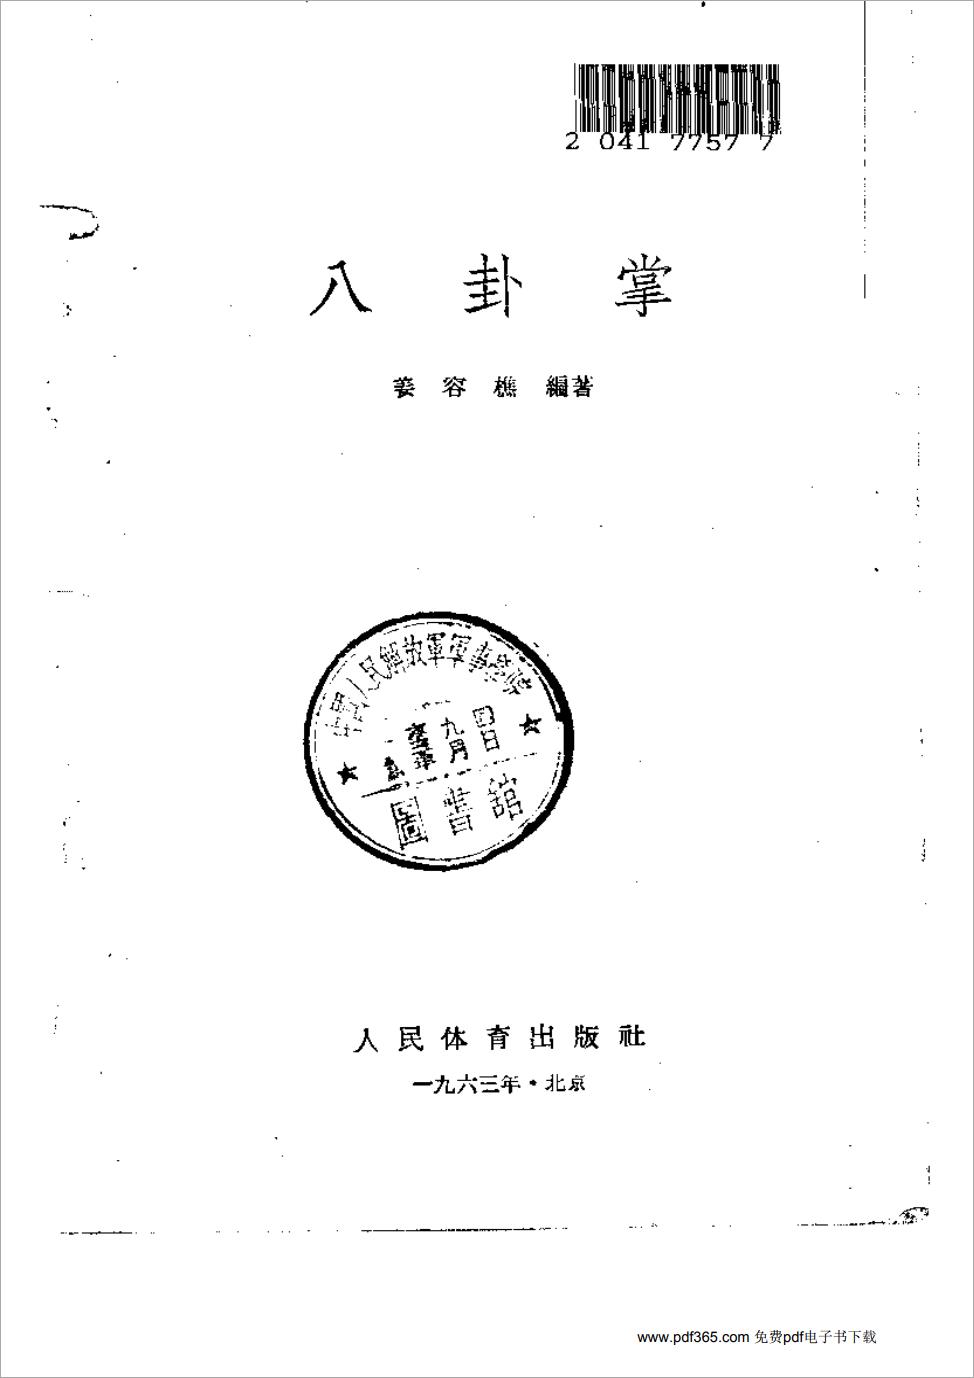 姜容樵-八卦掌153页.pdf